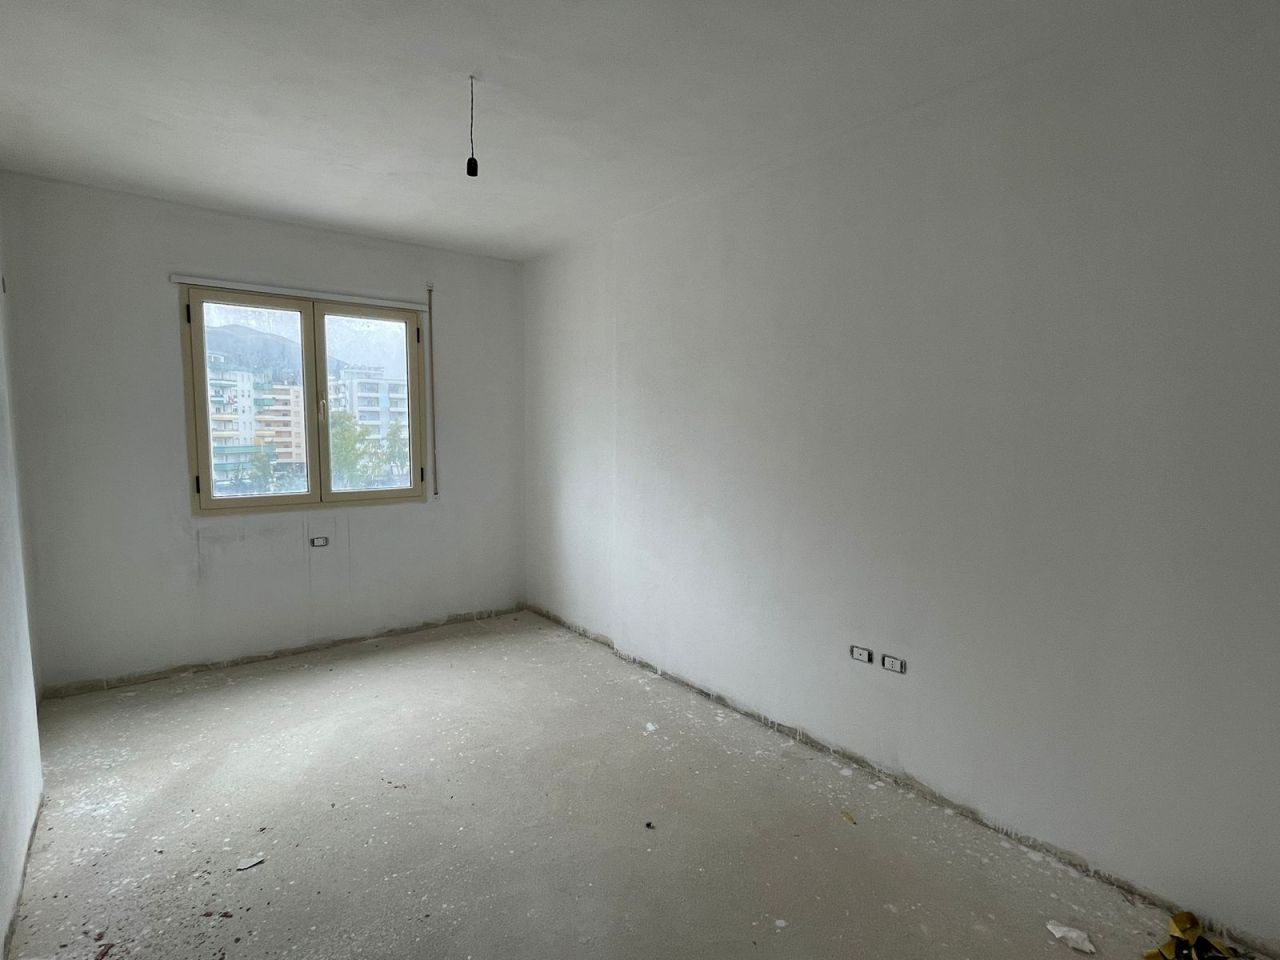 Продается квартира во Влере, Албания, расположенная в хорошем районе, всего в нескольких шагах от пляжа